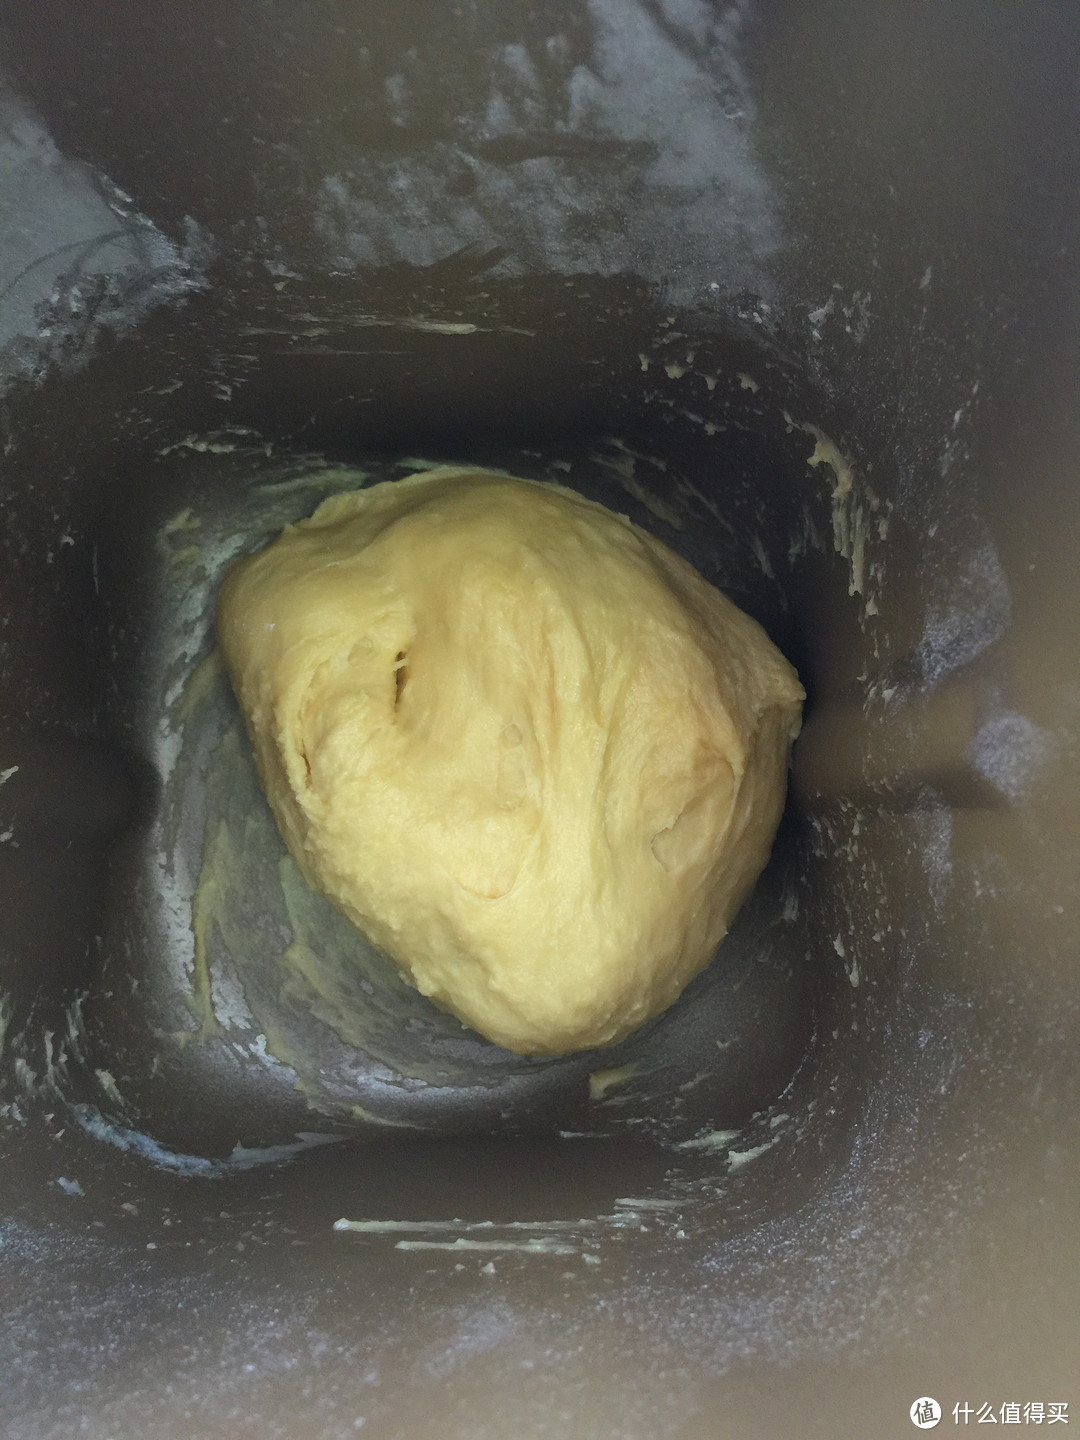 天然酵母发酵的筋道蓬松的皮立欧许面包